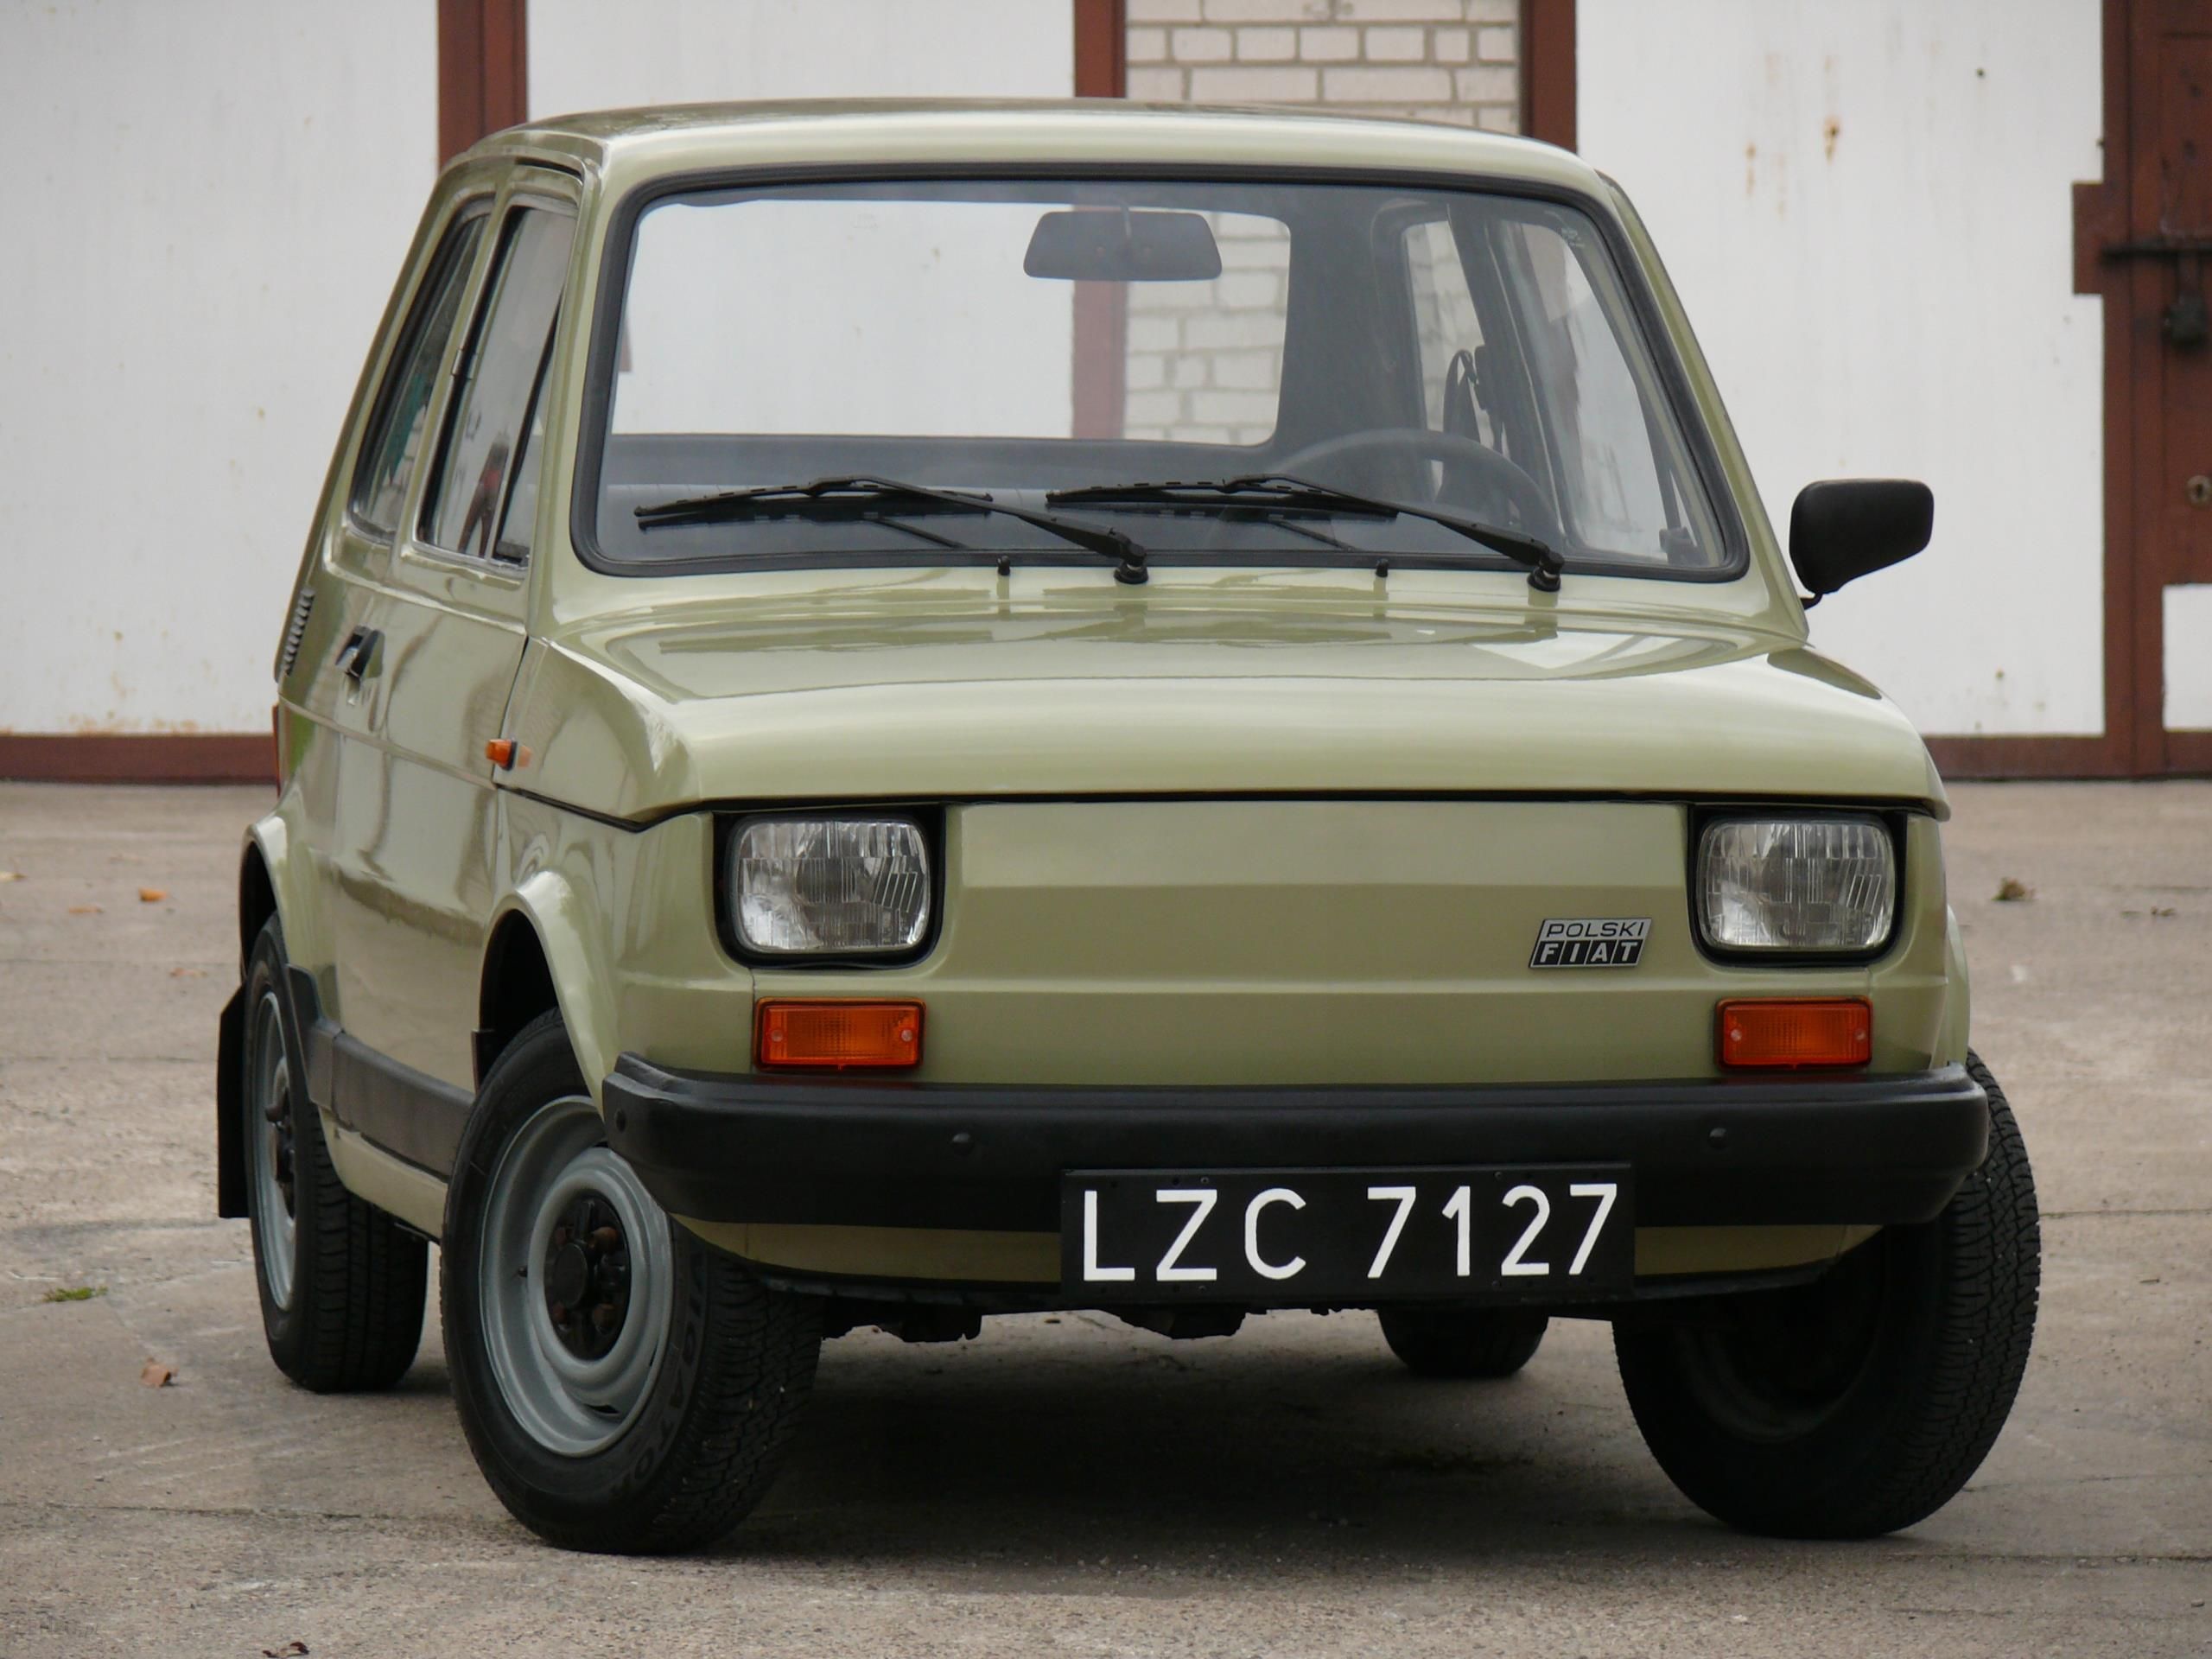 Polski Fiat 126p 1986 rok ładna oliwka Opinie i ceny